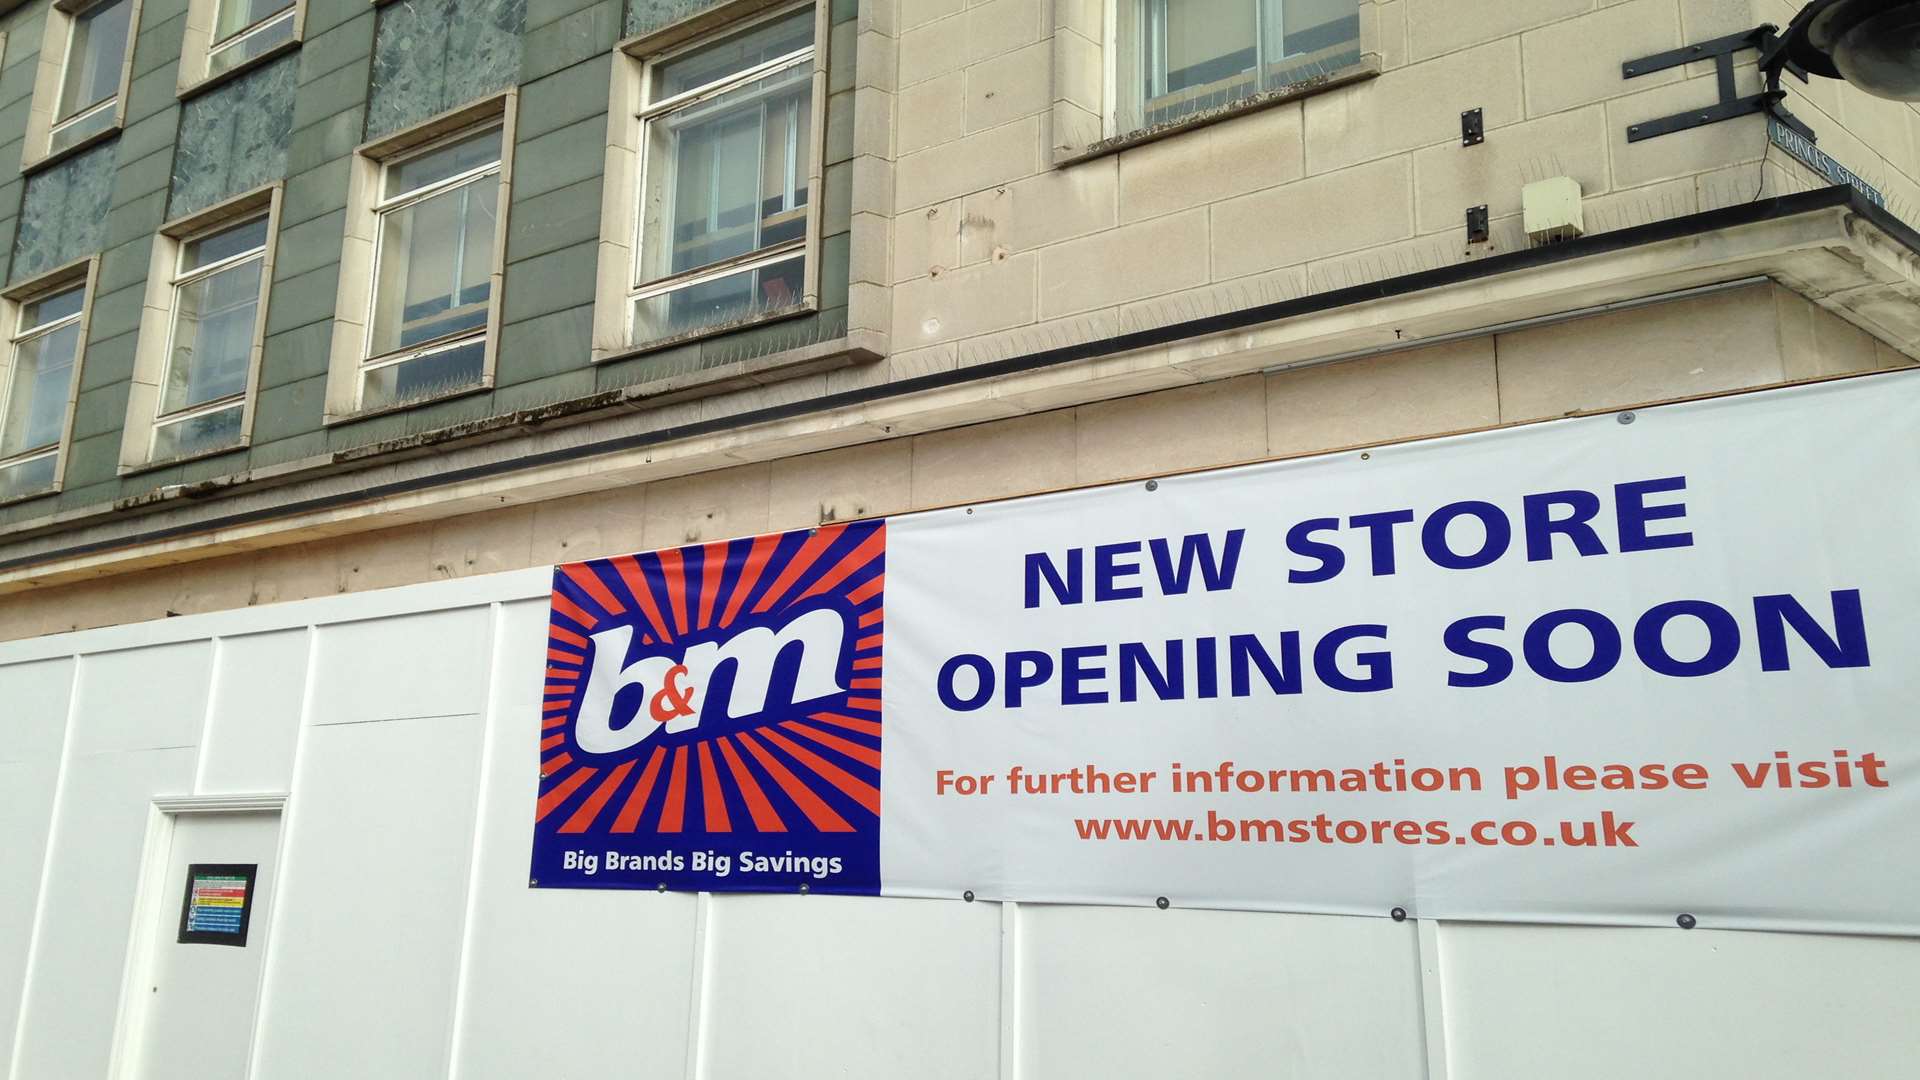 B&M will open in Gravesend next month.